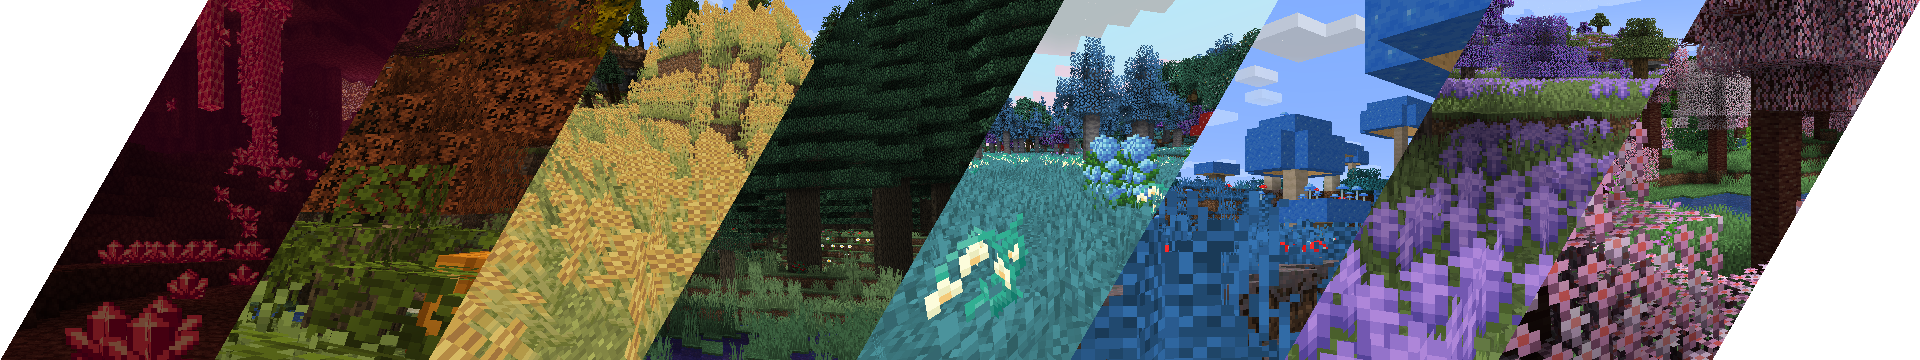 Biomes O' Plenty for Minecraft 1.16.5
